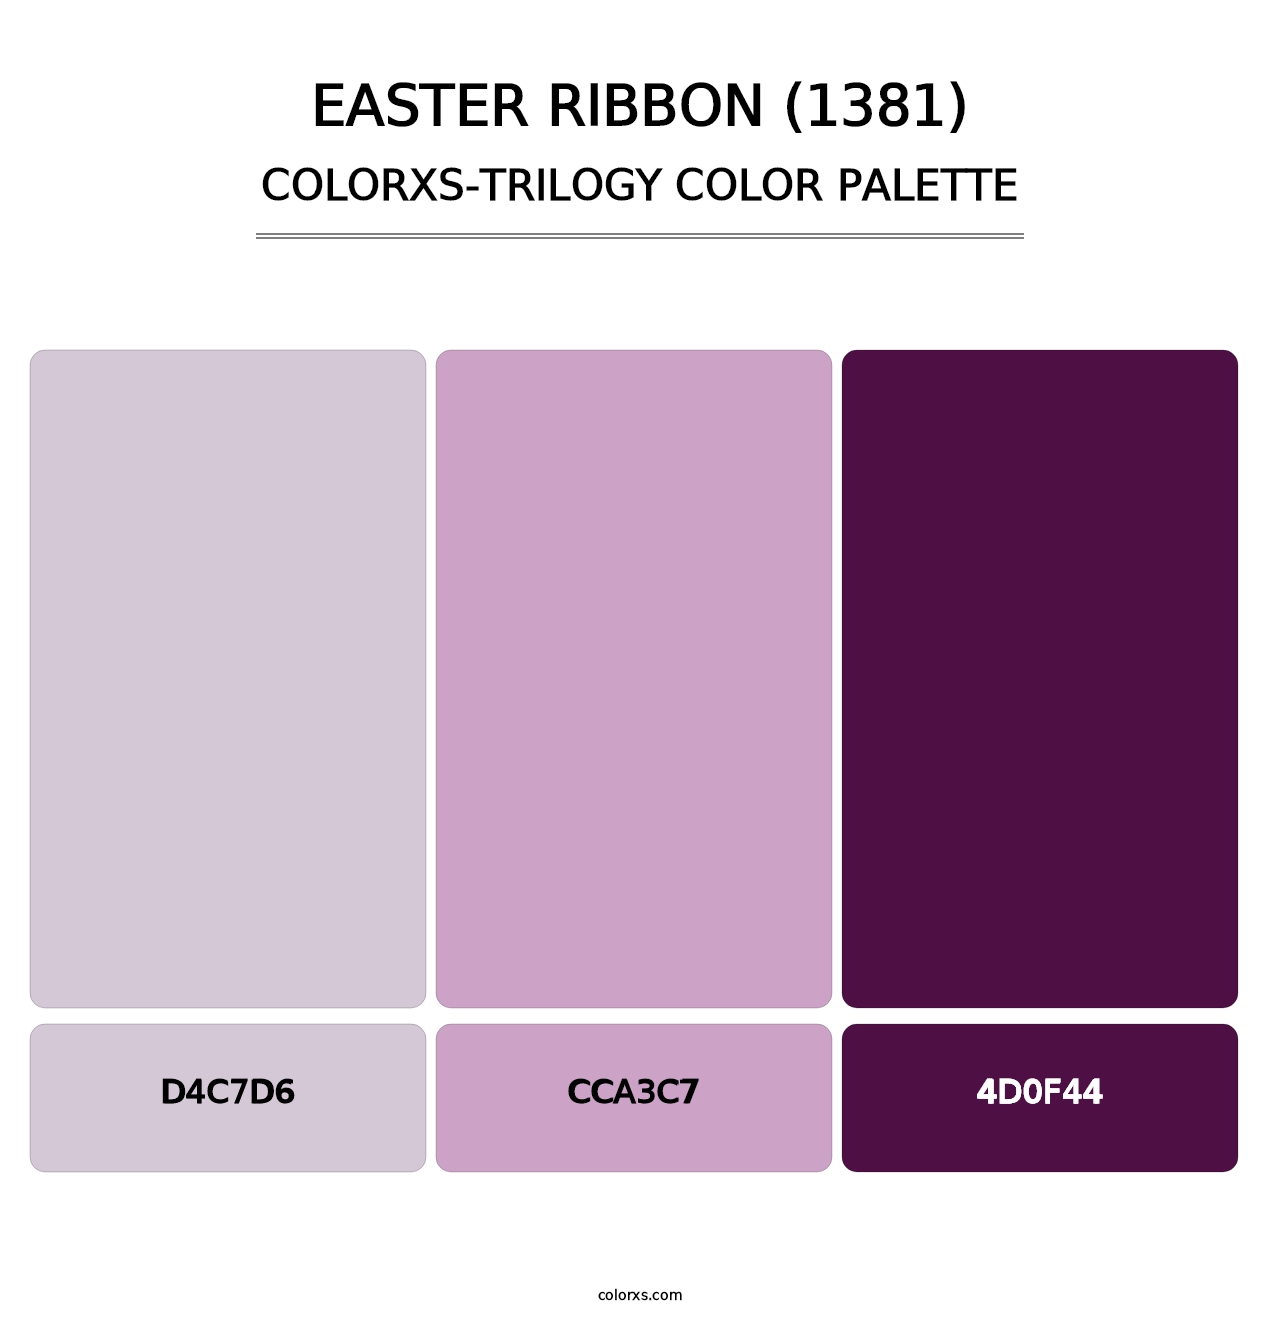 Easter Ribbon (1381) - Colorxs Trilogy Palette